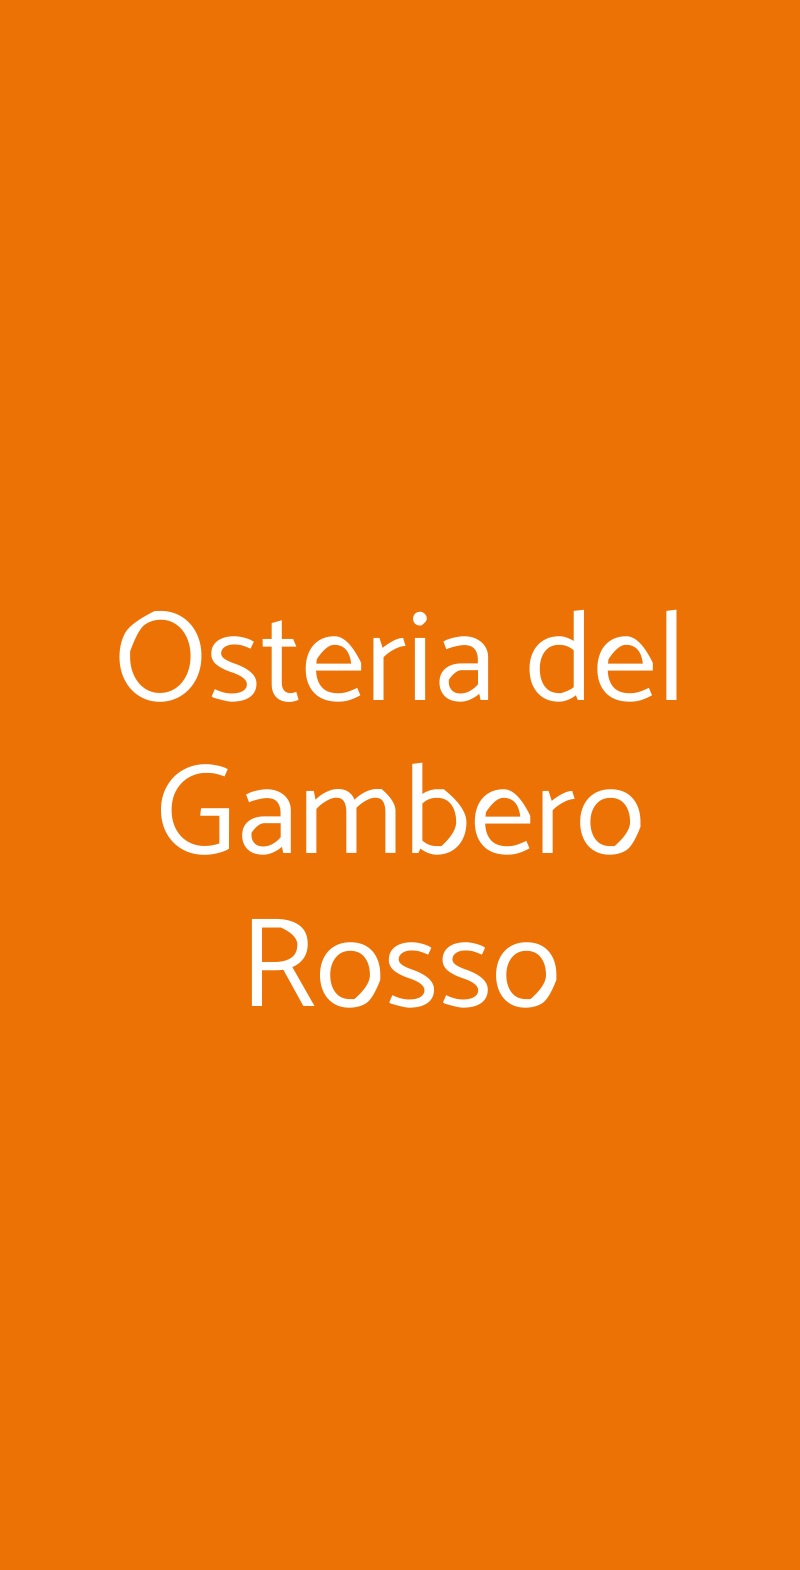 Osteria del Gambero Rosso Milano menù 1 pagina